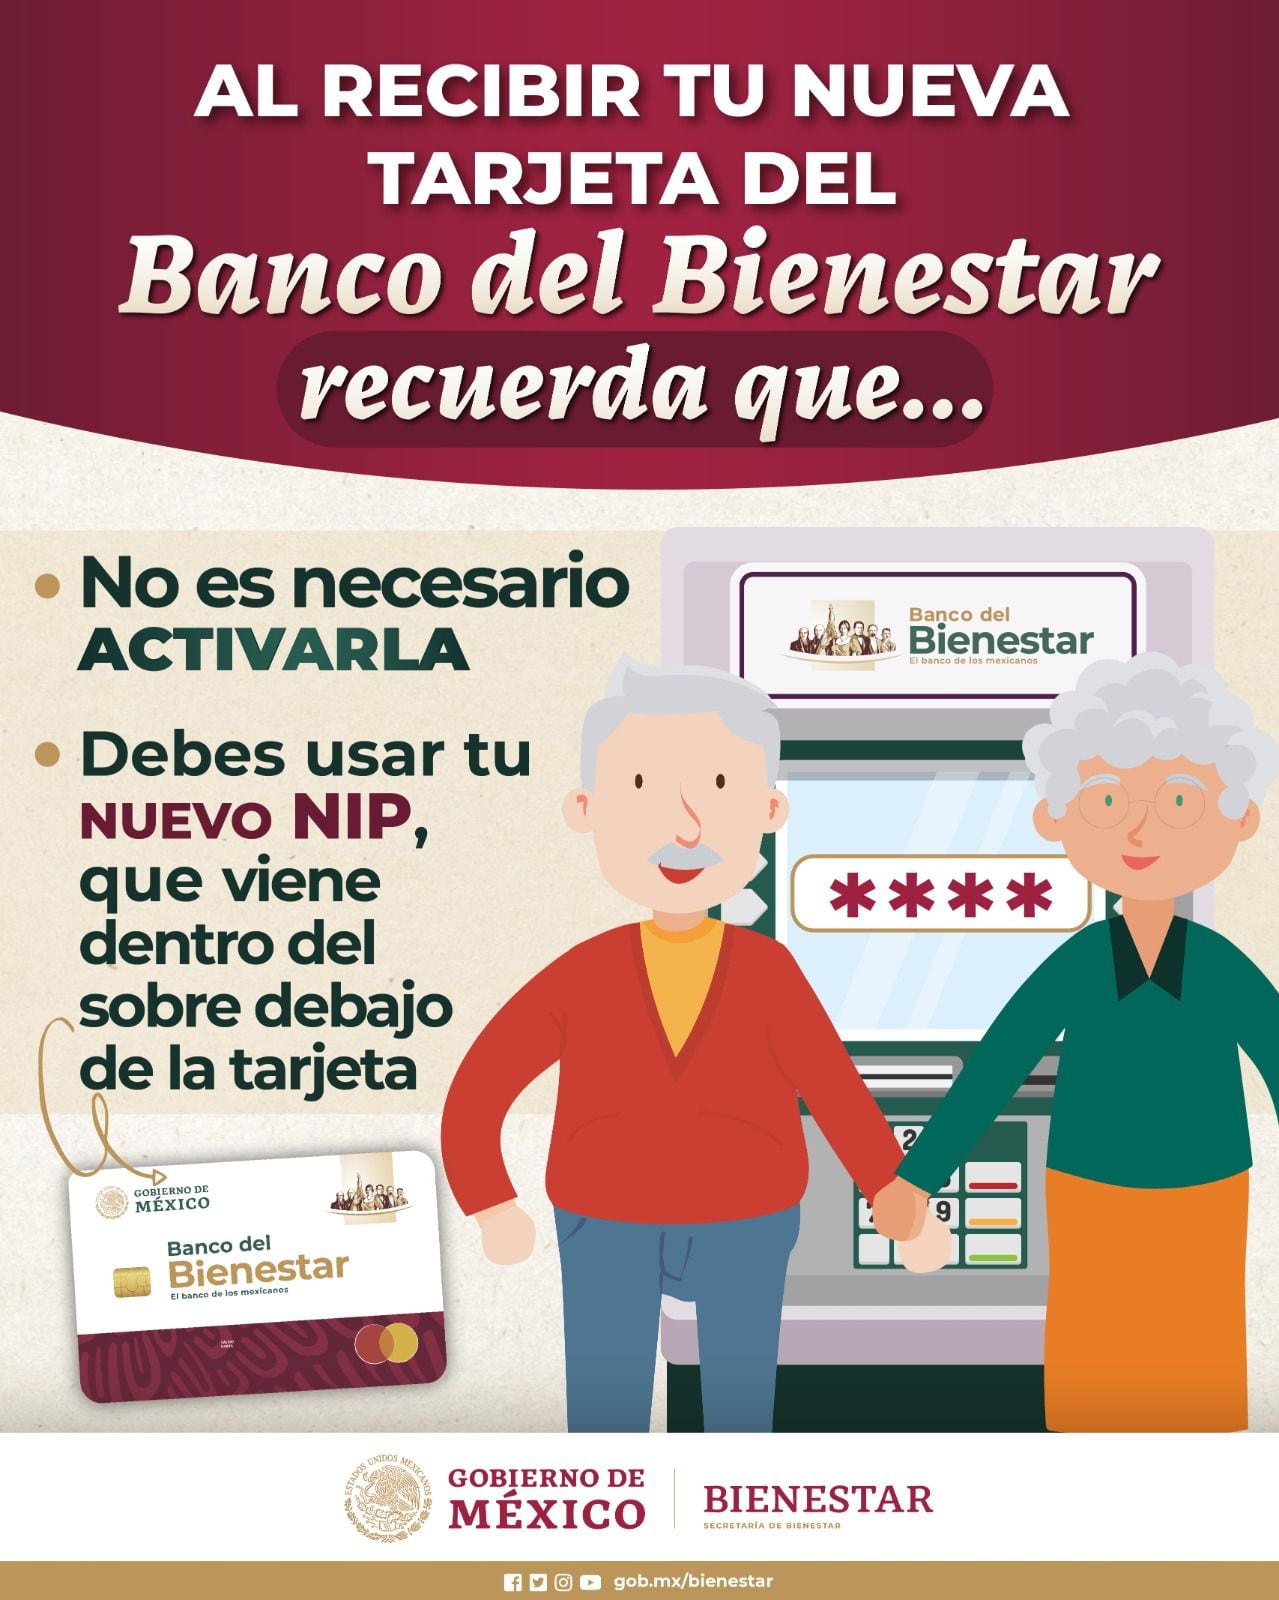 Banco del Bienestar: nueva tarjeta no necesita ser activada